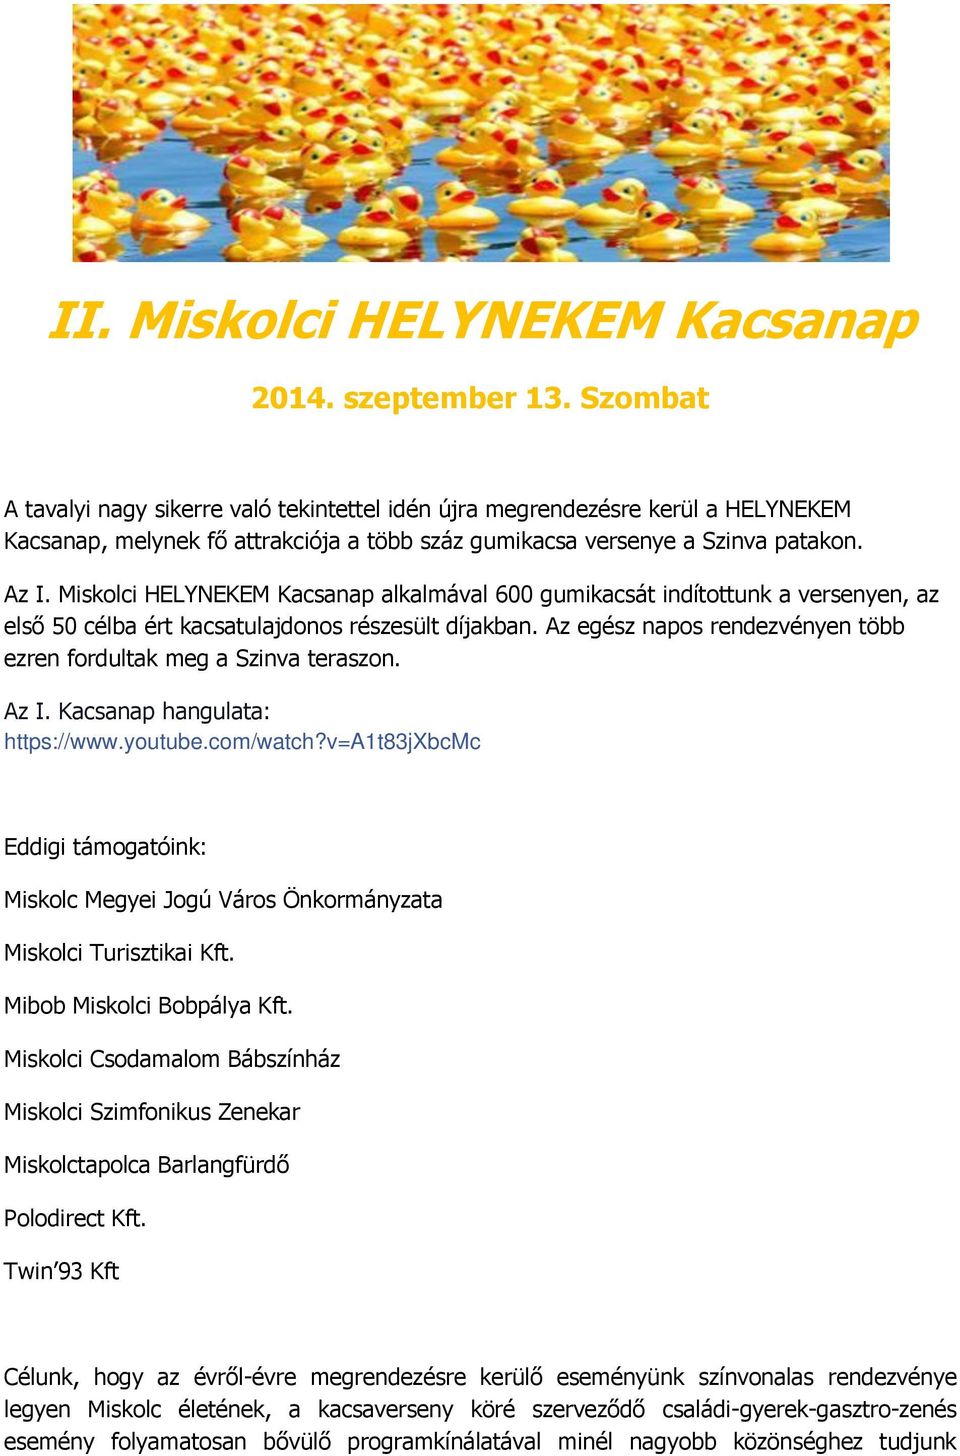 Miskolci HELYNEKEM Kacsanap alkalmával 600 gumikacsát indítottunk a versenyen, az első 50 célba ért kacsatulajdonos részesült díjakban.